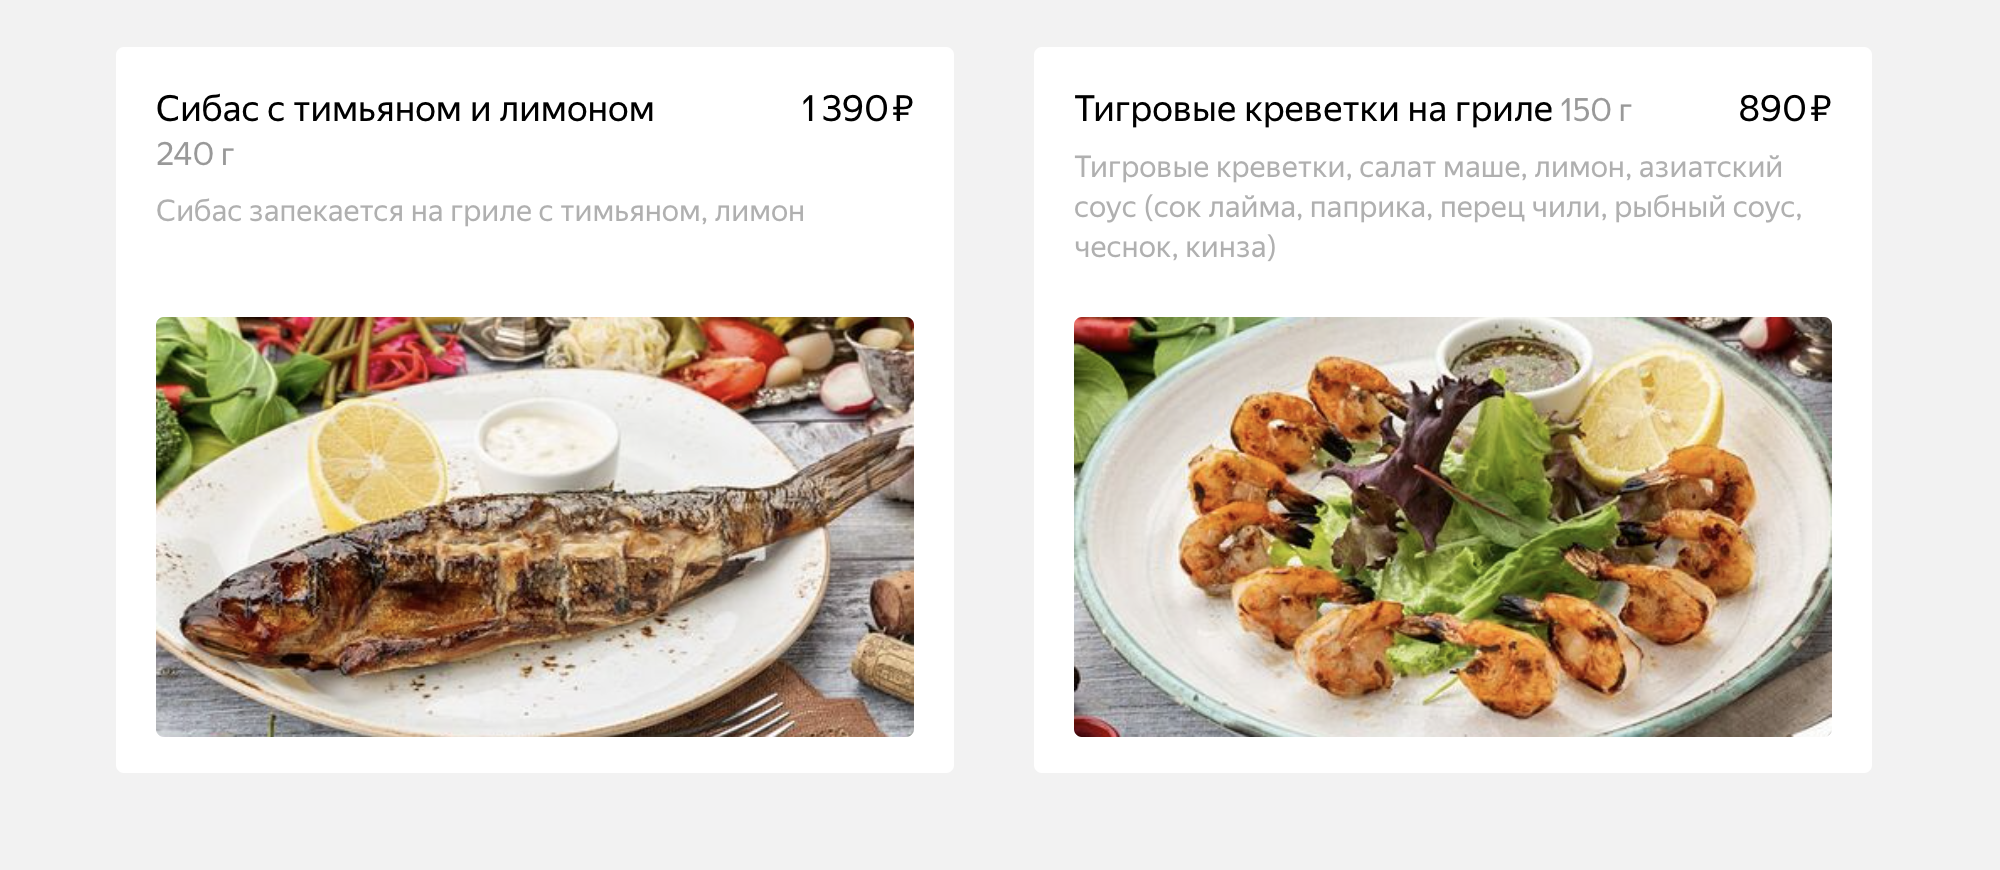 Этот ресторан есть и на «Яндекс⁠-⁠еде». В каталоге указано, что тигровые креветки подаются с соусом, в котором есть чеснок, — мне это не подходит. Источник: eda.yandex.ru